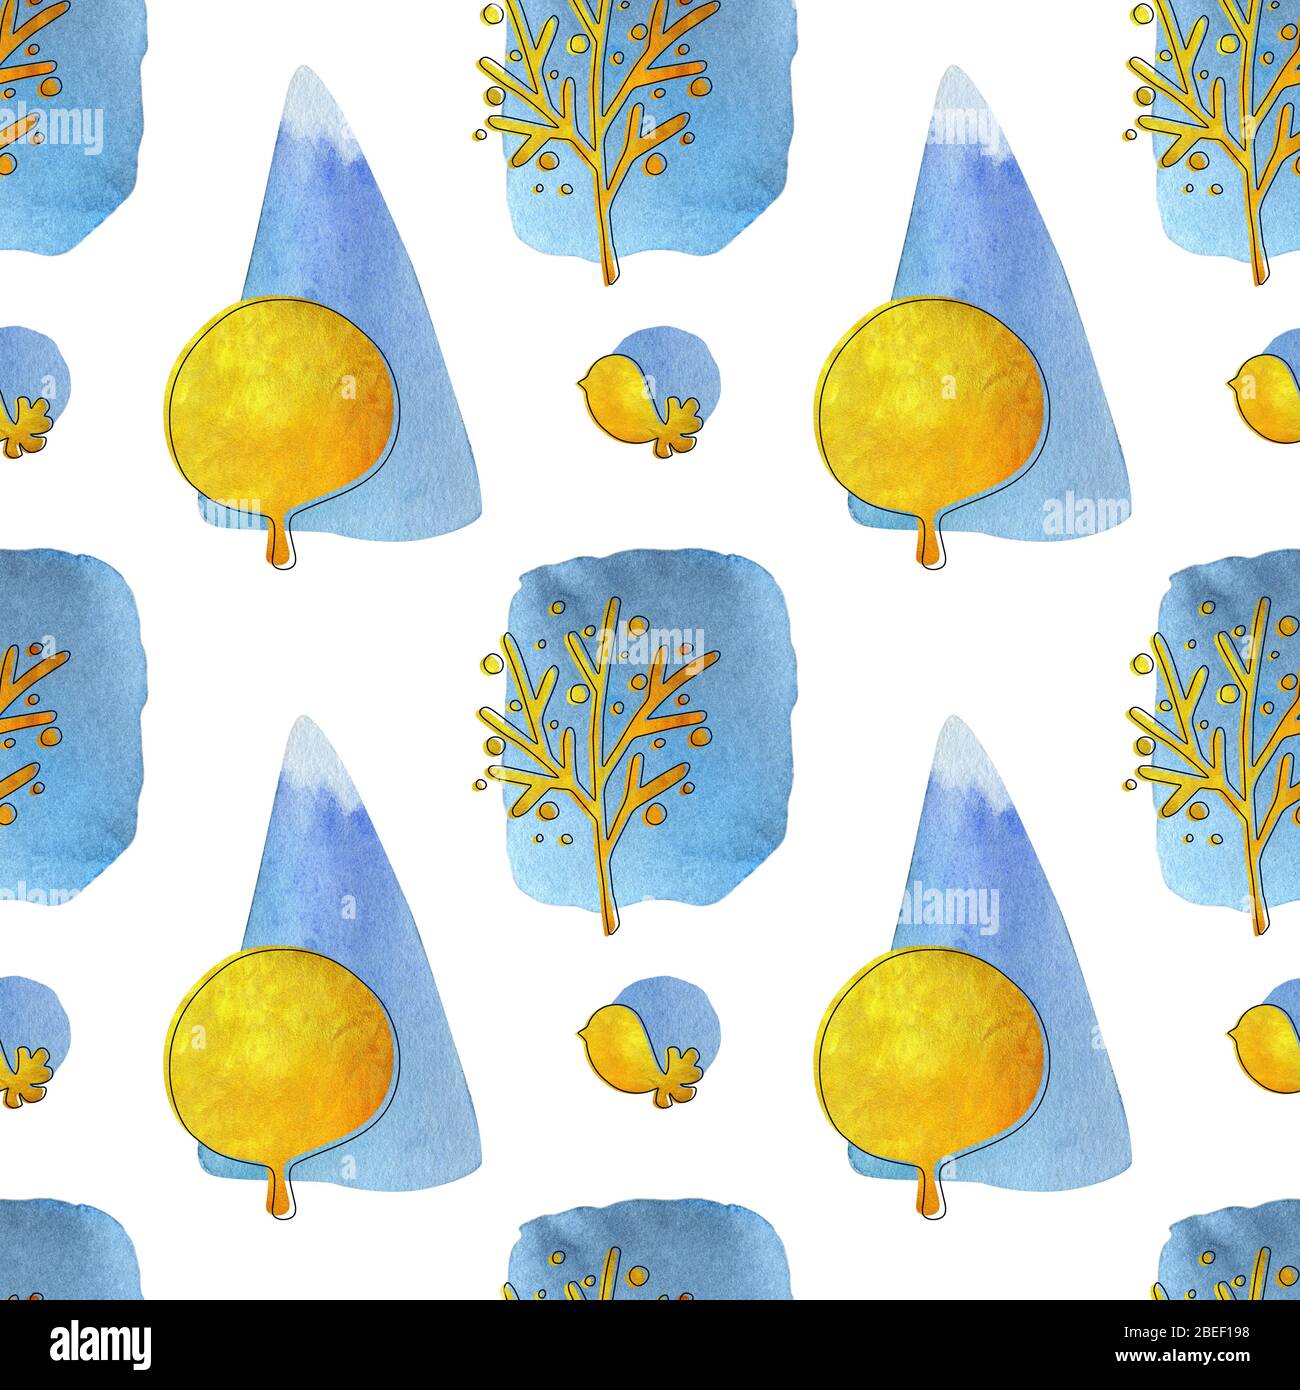 Aquarell nahtlose Muster mit Vögeln, Bäumen und bunten geometrischen Formen auf dem hellen Hintergrund. Handgezeichnetes Goldwasser mit Tuschstrich. Stockfoto